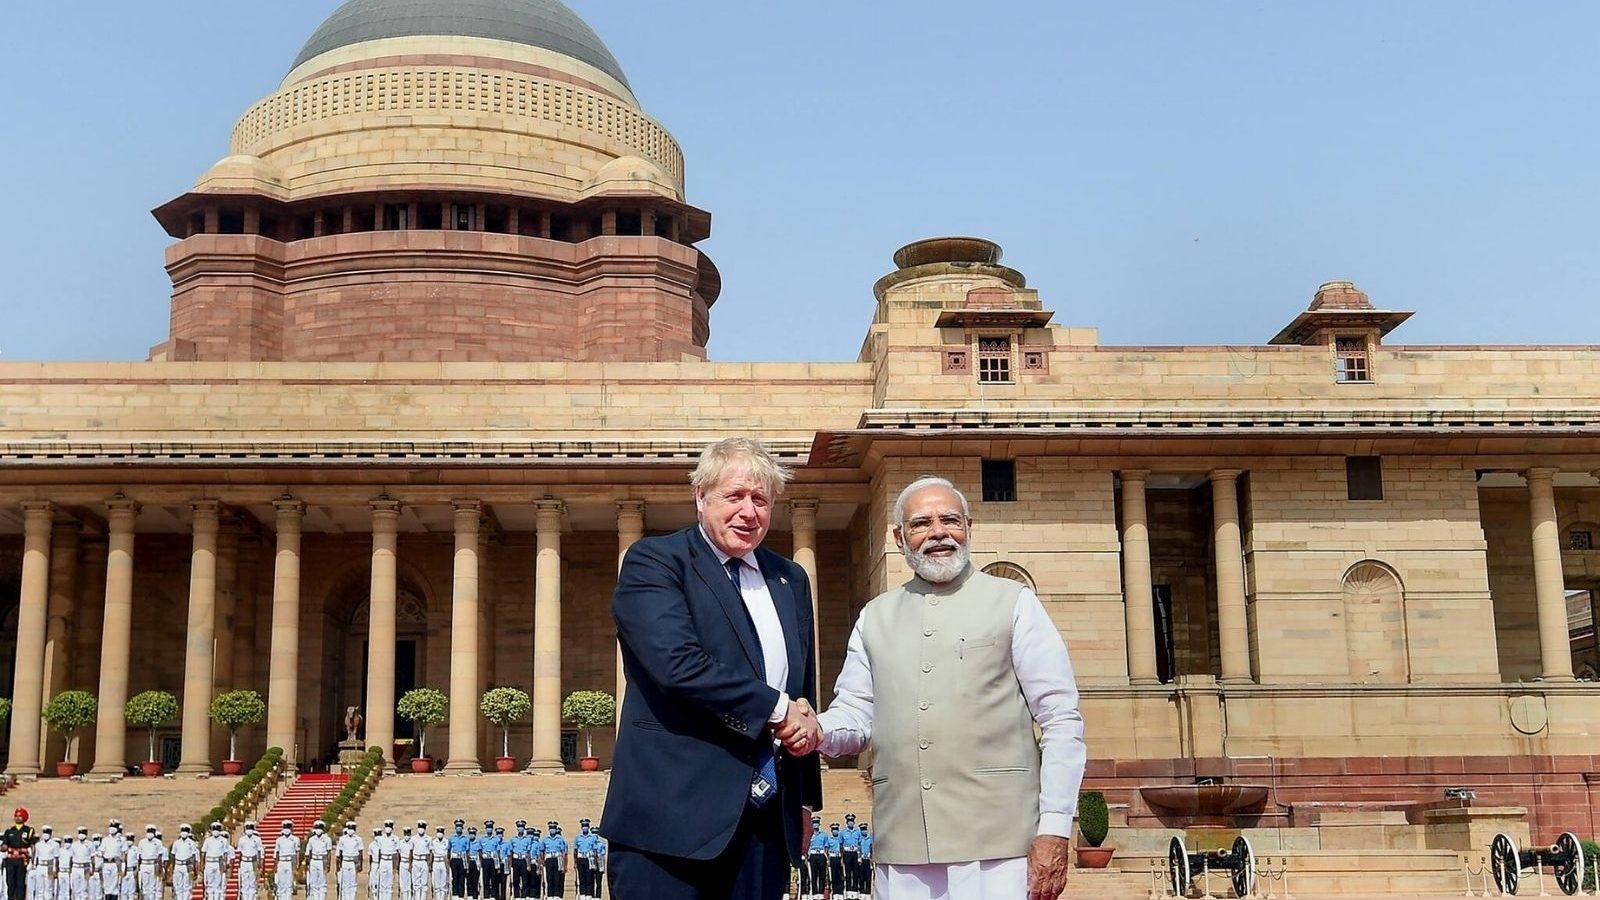 Dorong ke depan dengan Inggris pada kesepakatan perdagangan bebas, kata PM Modi setelah bilateral